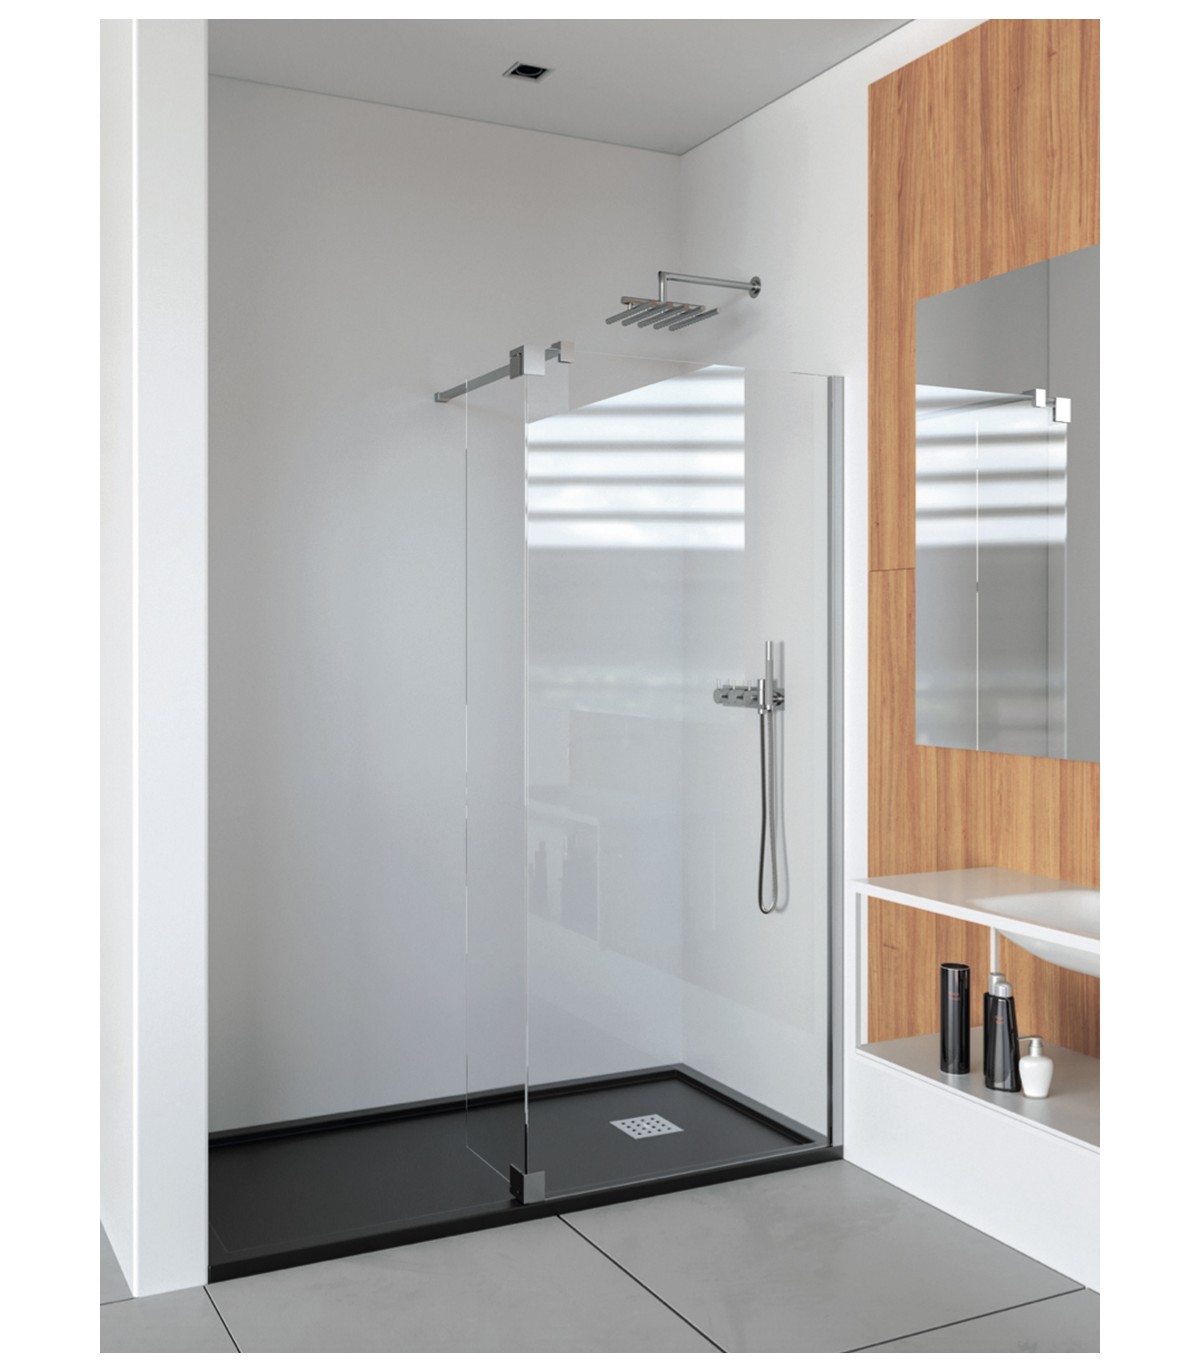 Mampara de ducha 90x90 con lateral fijo y puerta batiente en cristal  transparente de 8 mm